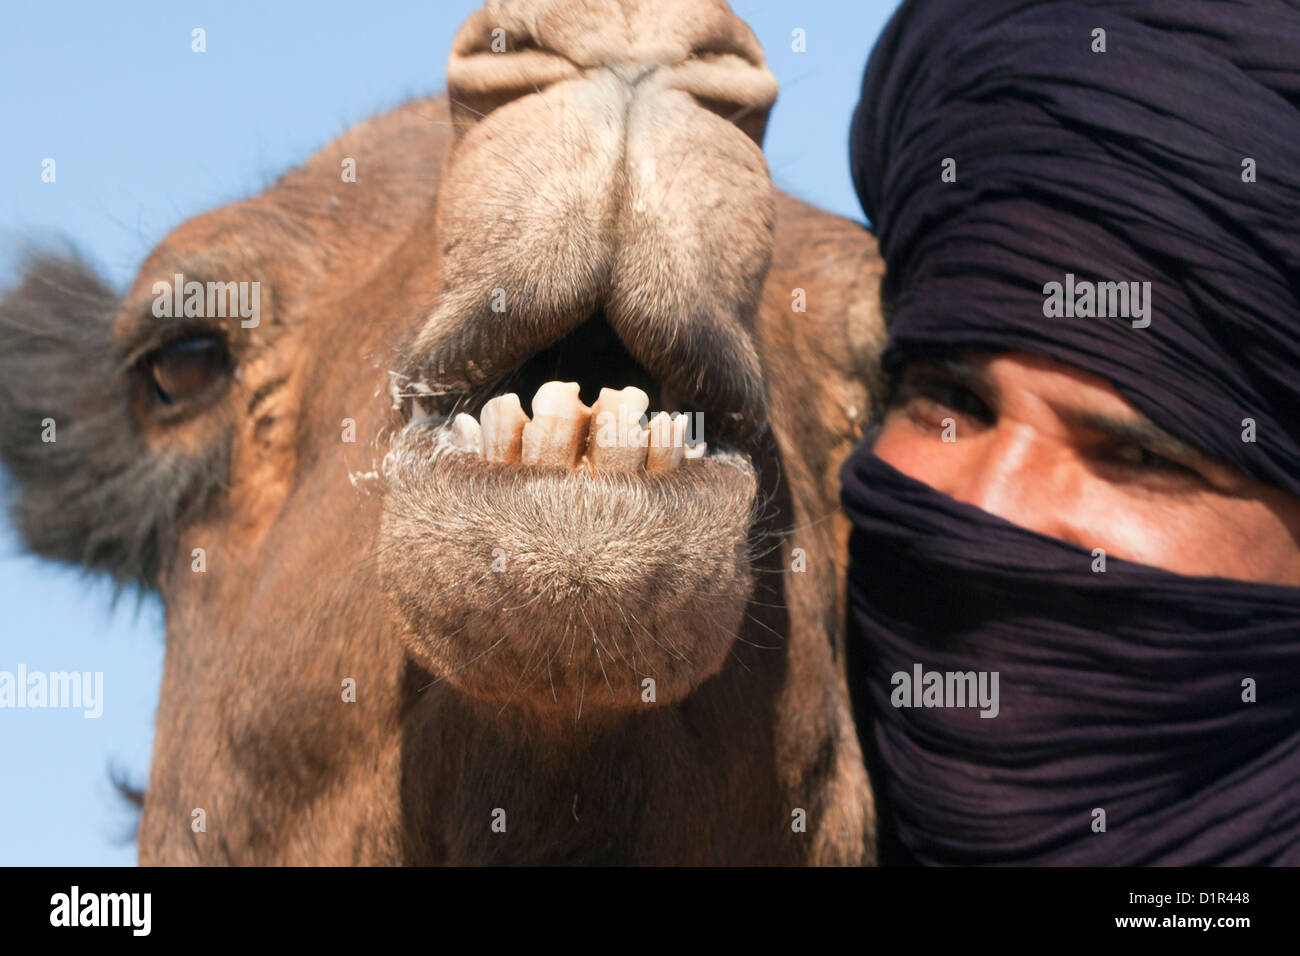 Morocco, M'Hamid, Erg Chigaga. Sahara desert. Camel and camel-driver. Stock Photo